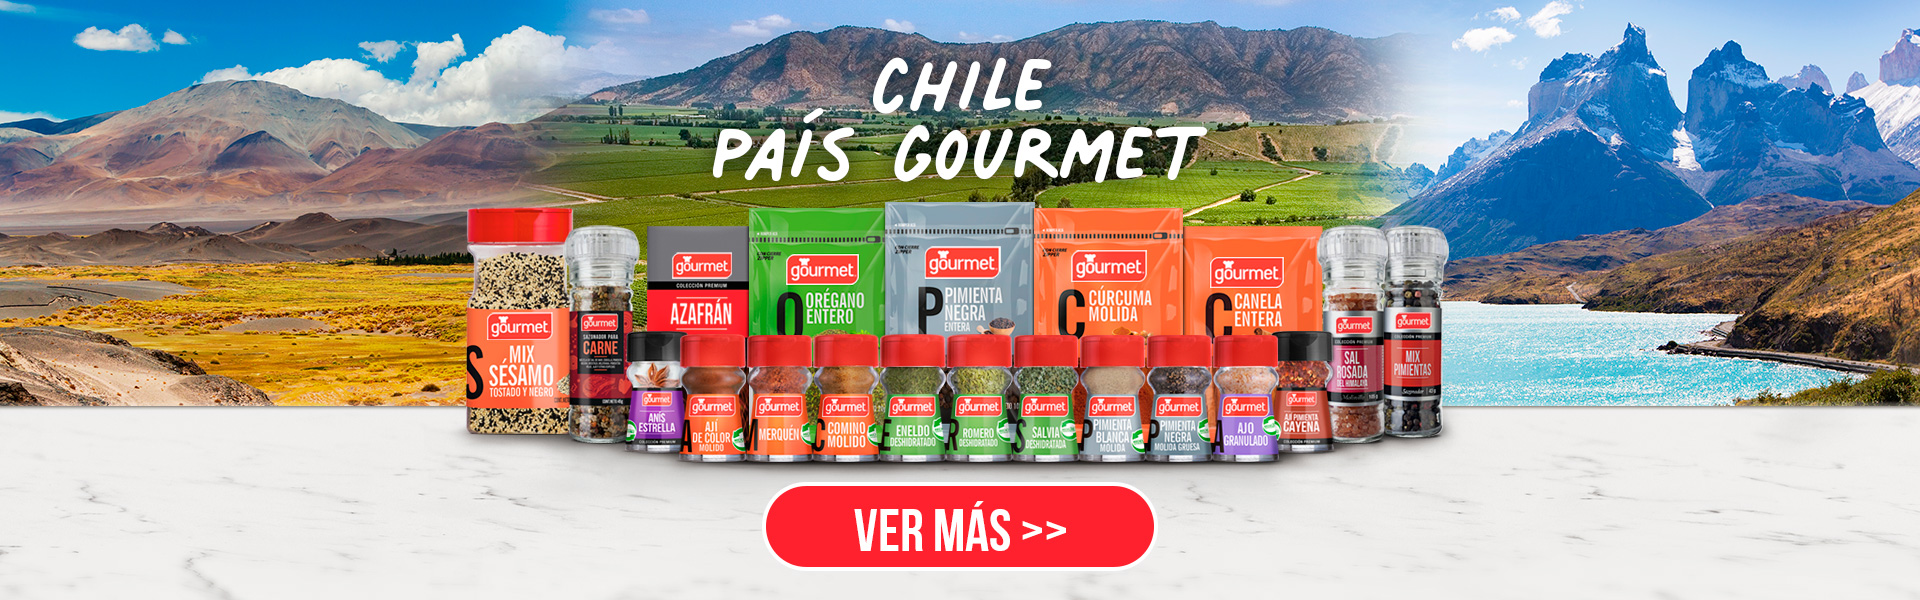 Chile País Gourmet - Condimentos